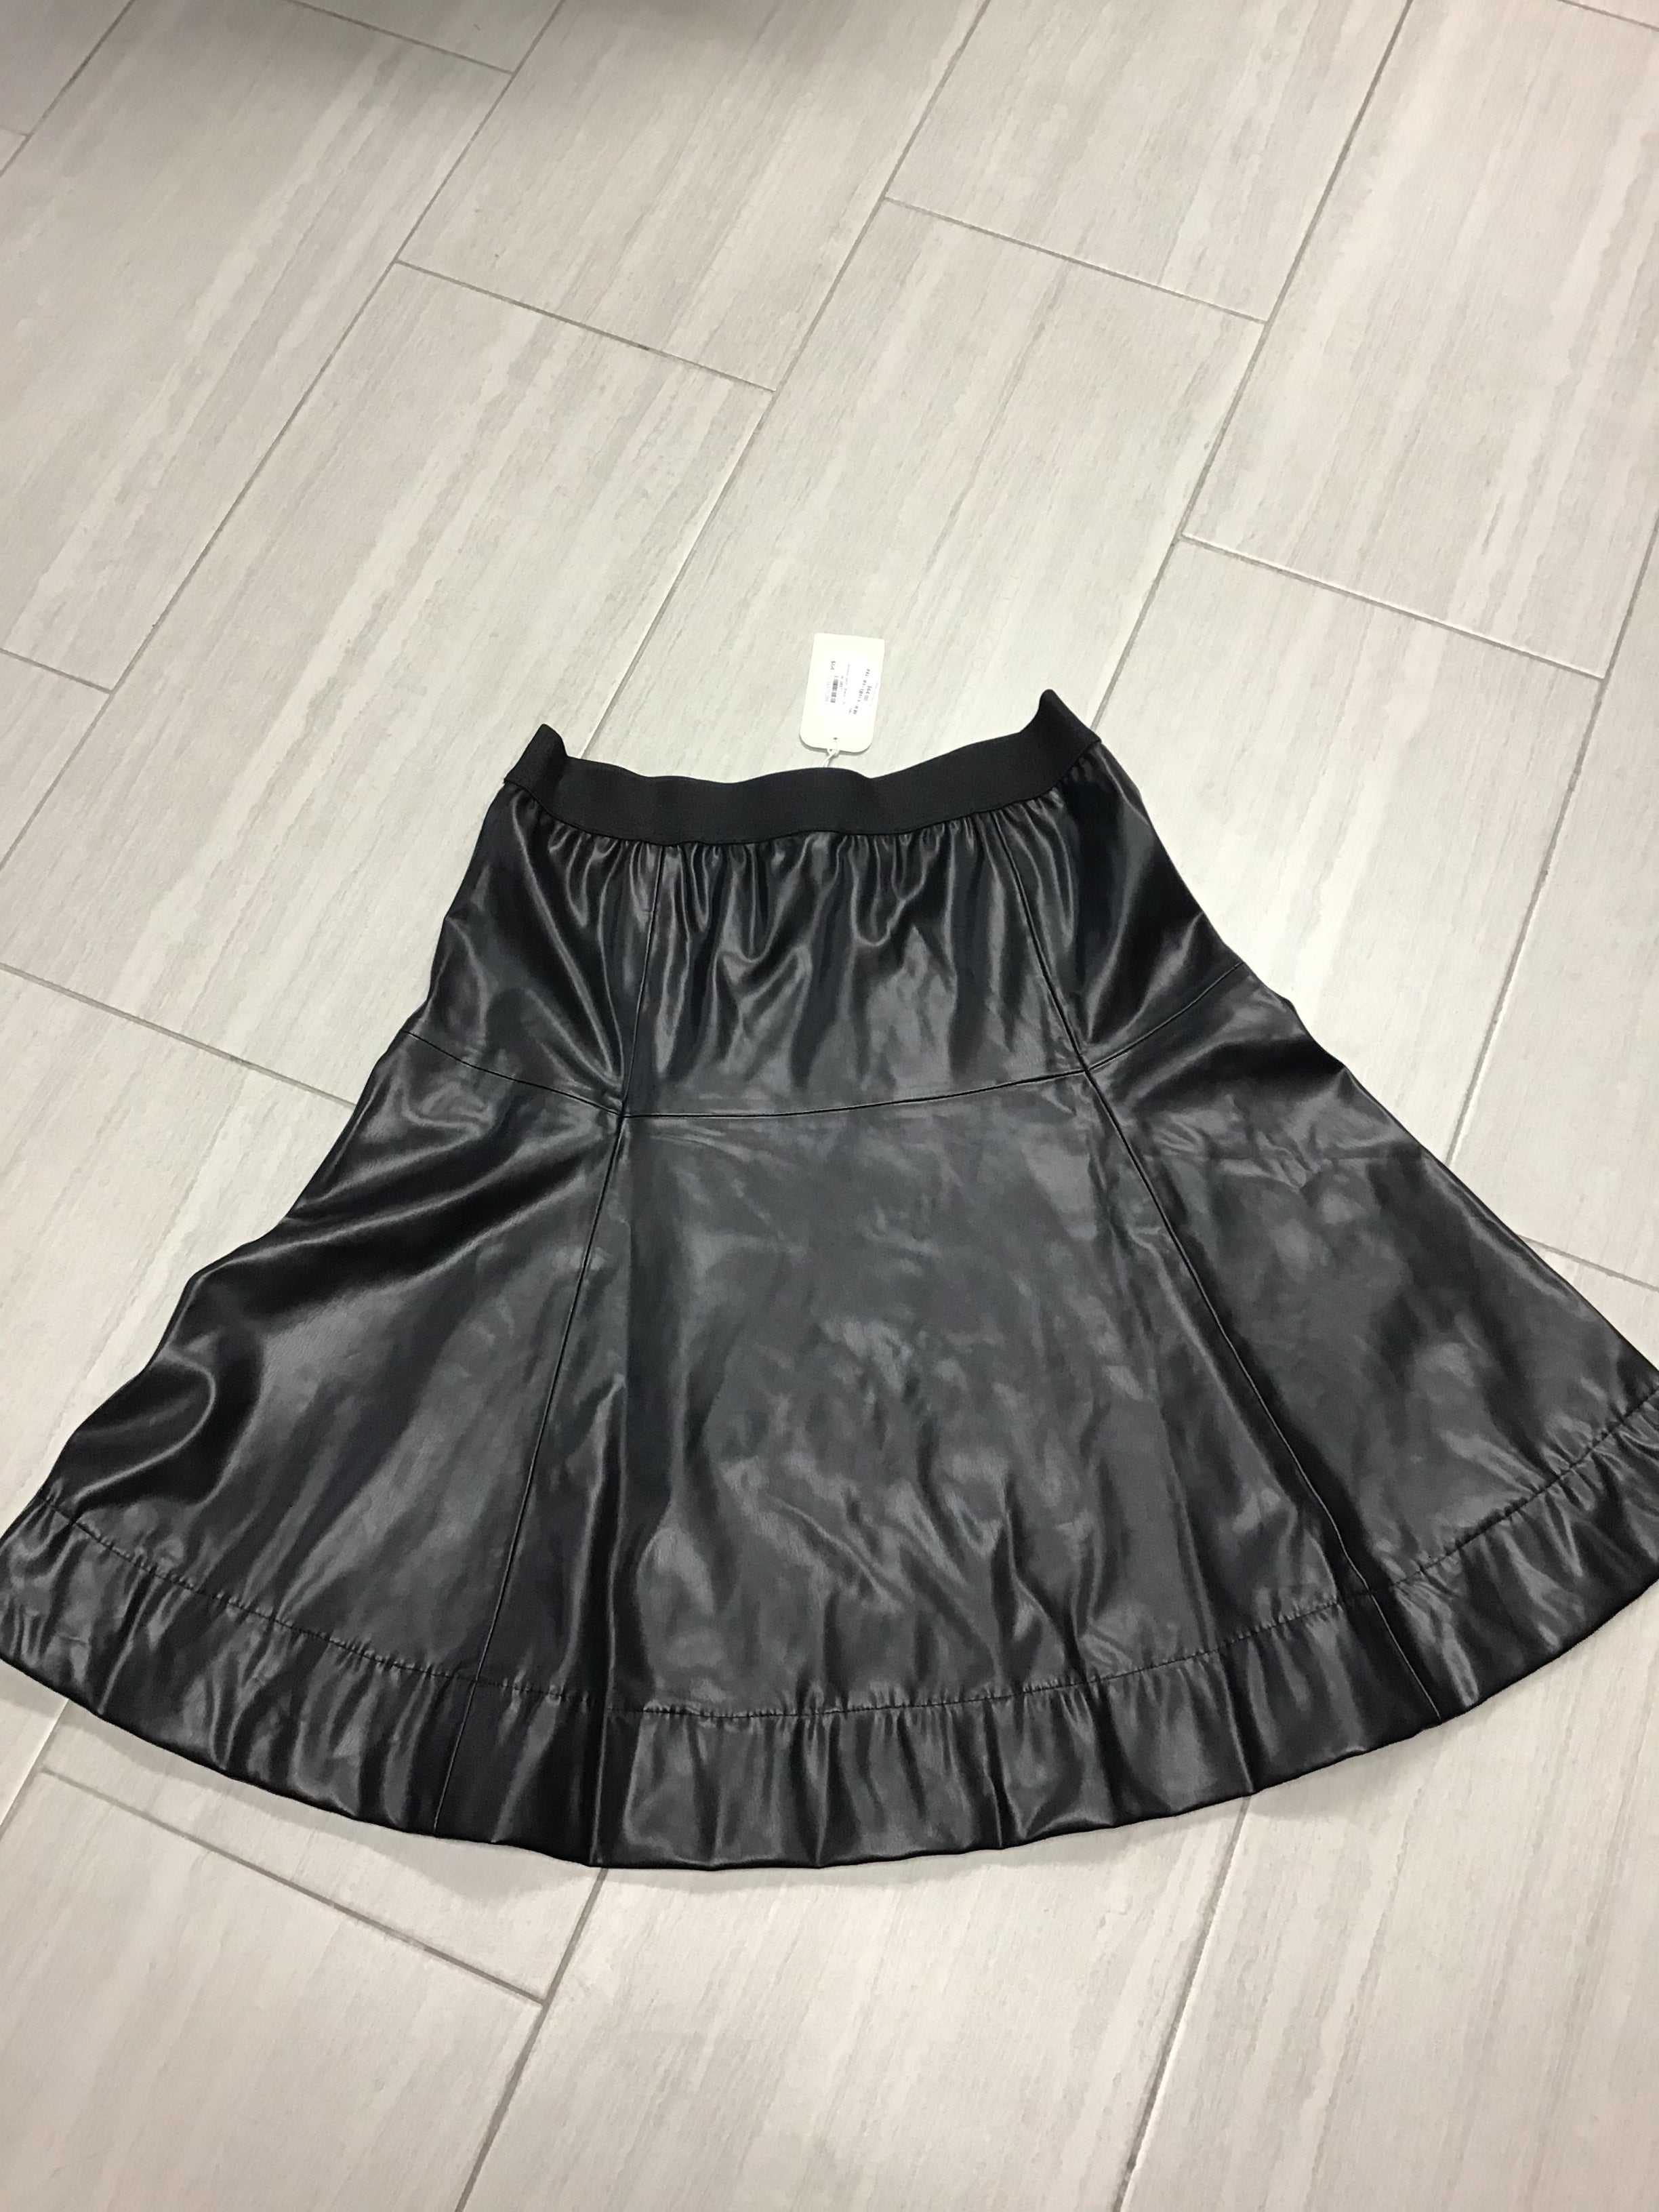 Leather Short Skirt